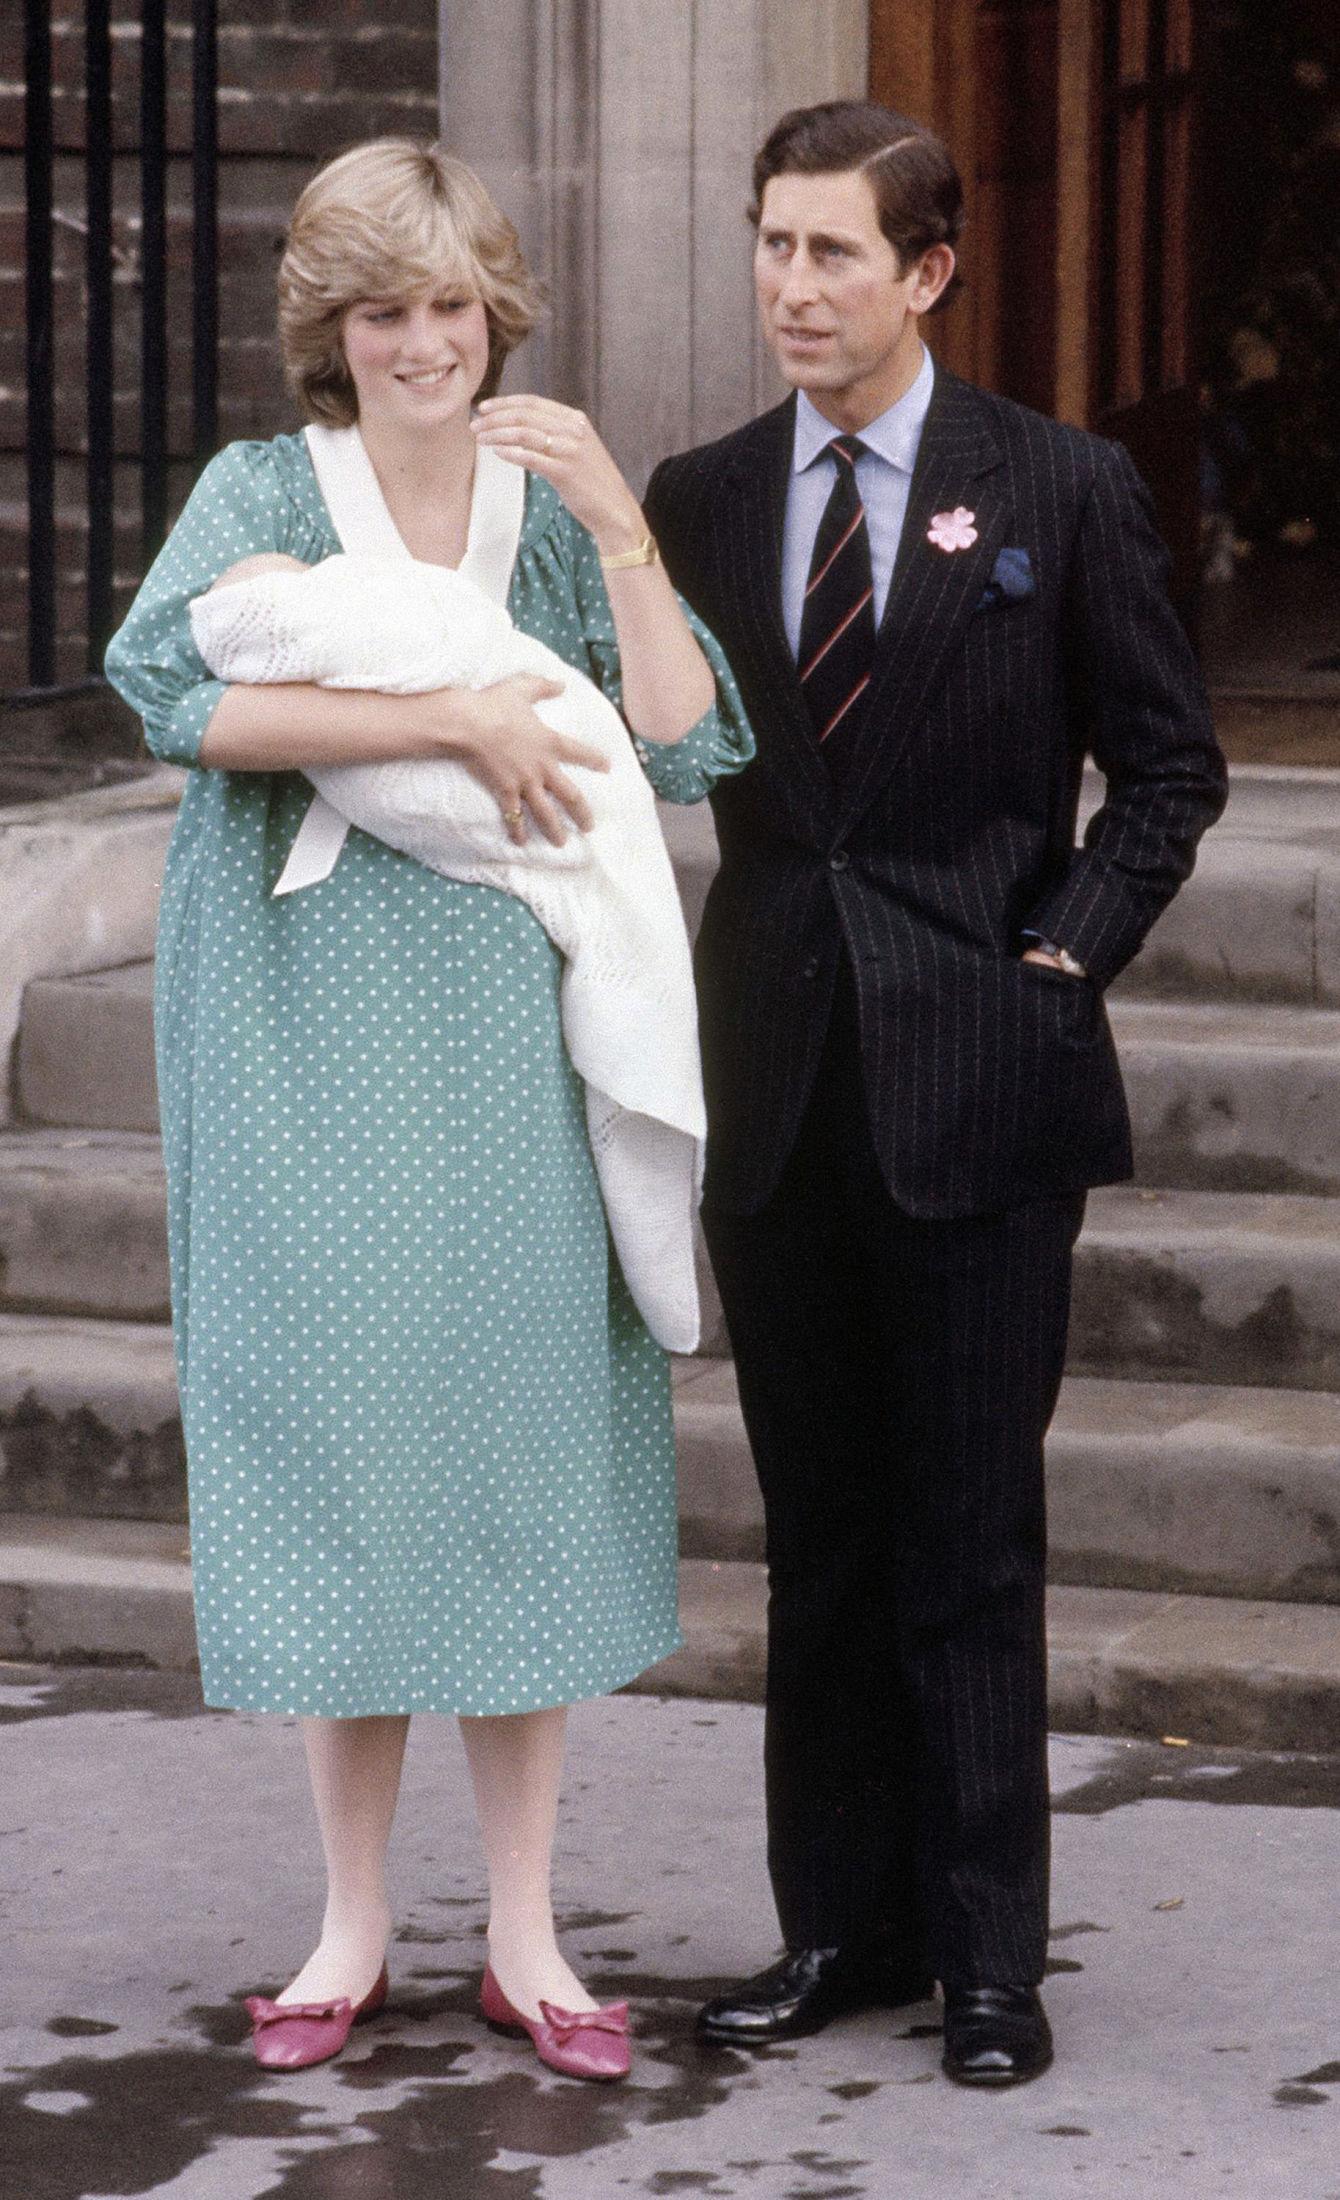 FØRSTEFØDTE: Prinsesse Diana og prins Charles viste fram William dagen etter fødsel. Diana hadde på seg en lysegrønn kjole med hvite prikker. Foto: AP